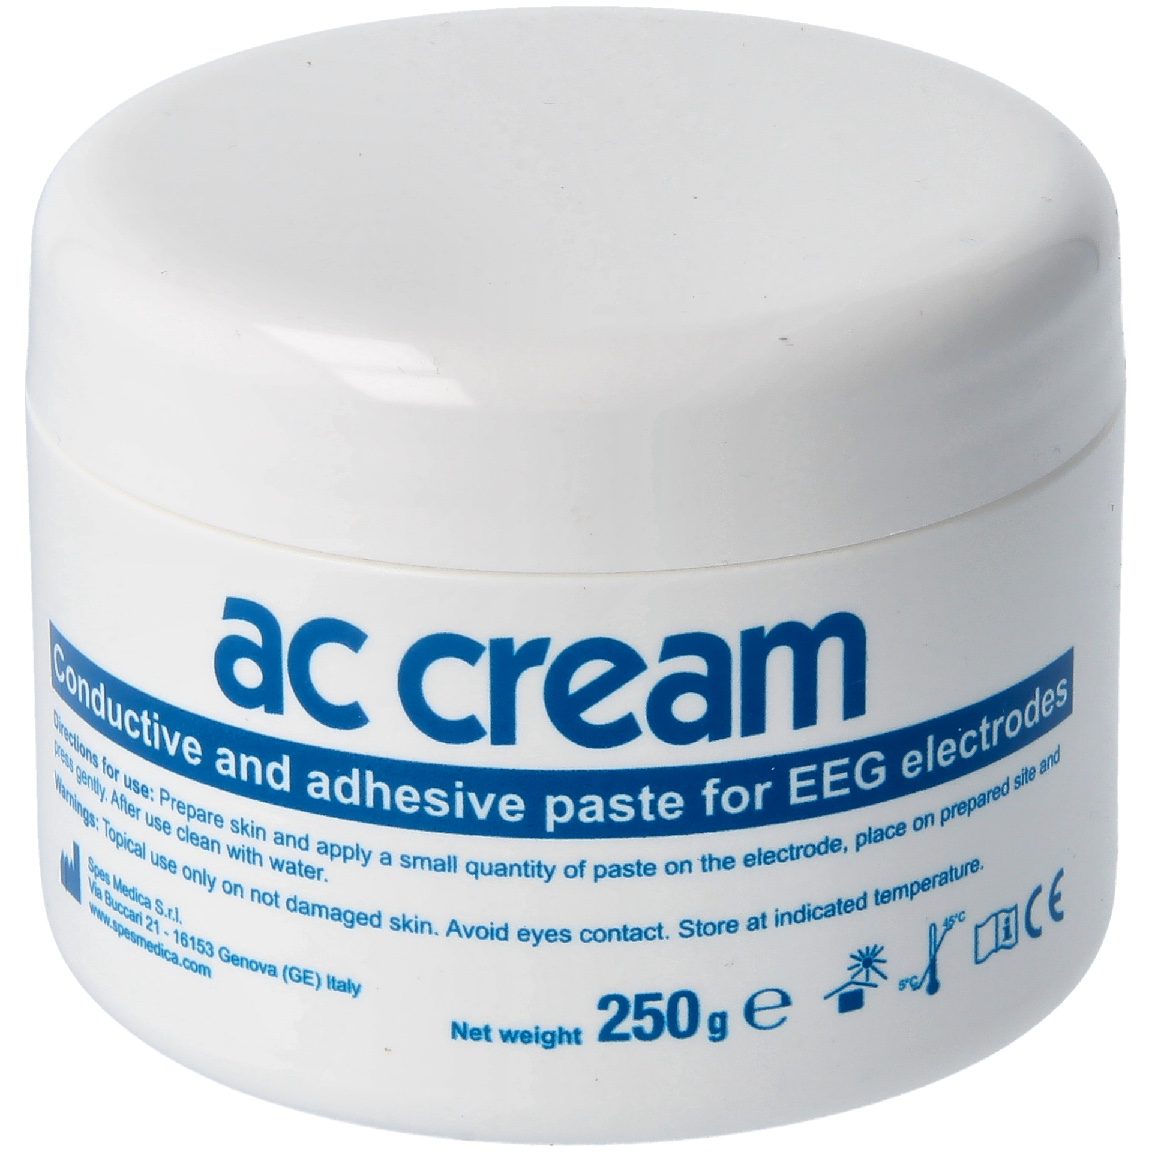 ACC Cream